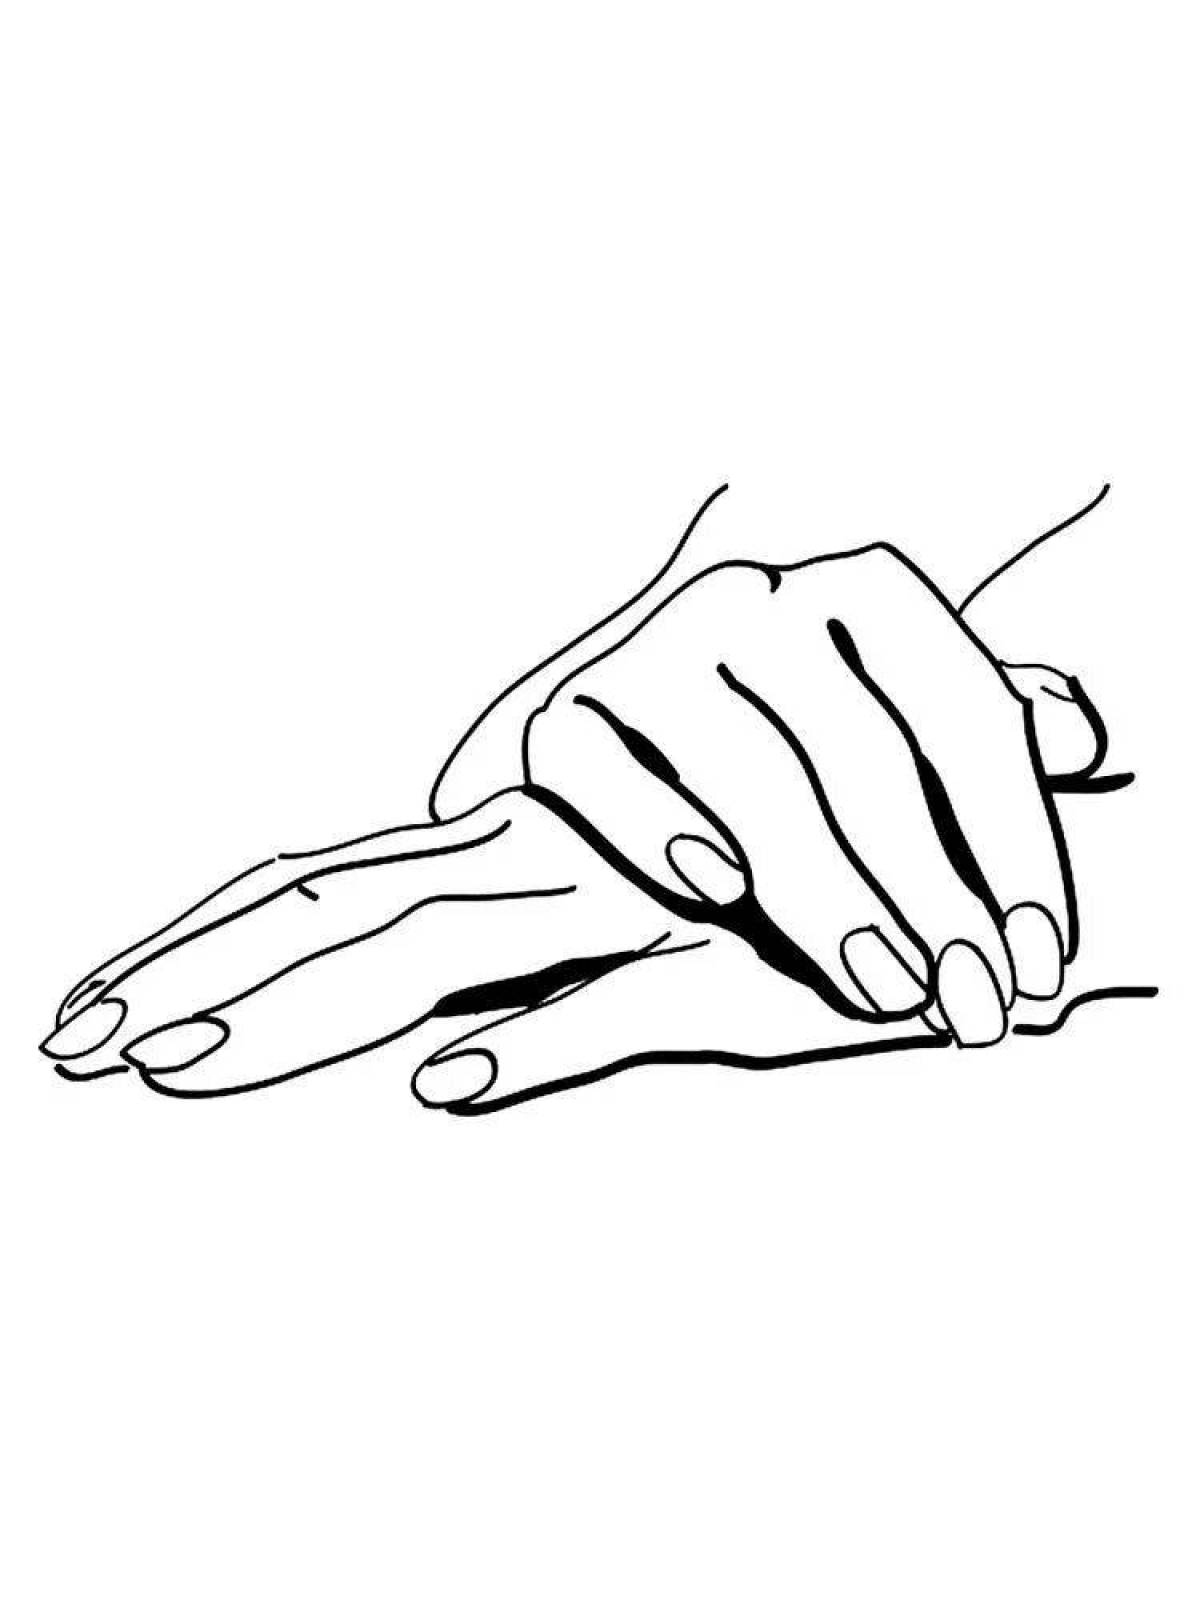 Раскраска необычная рука с длинными ногтями